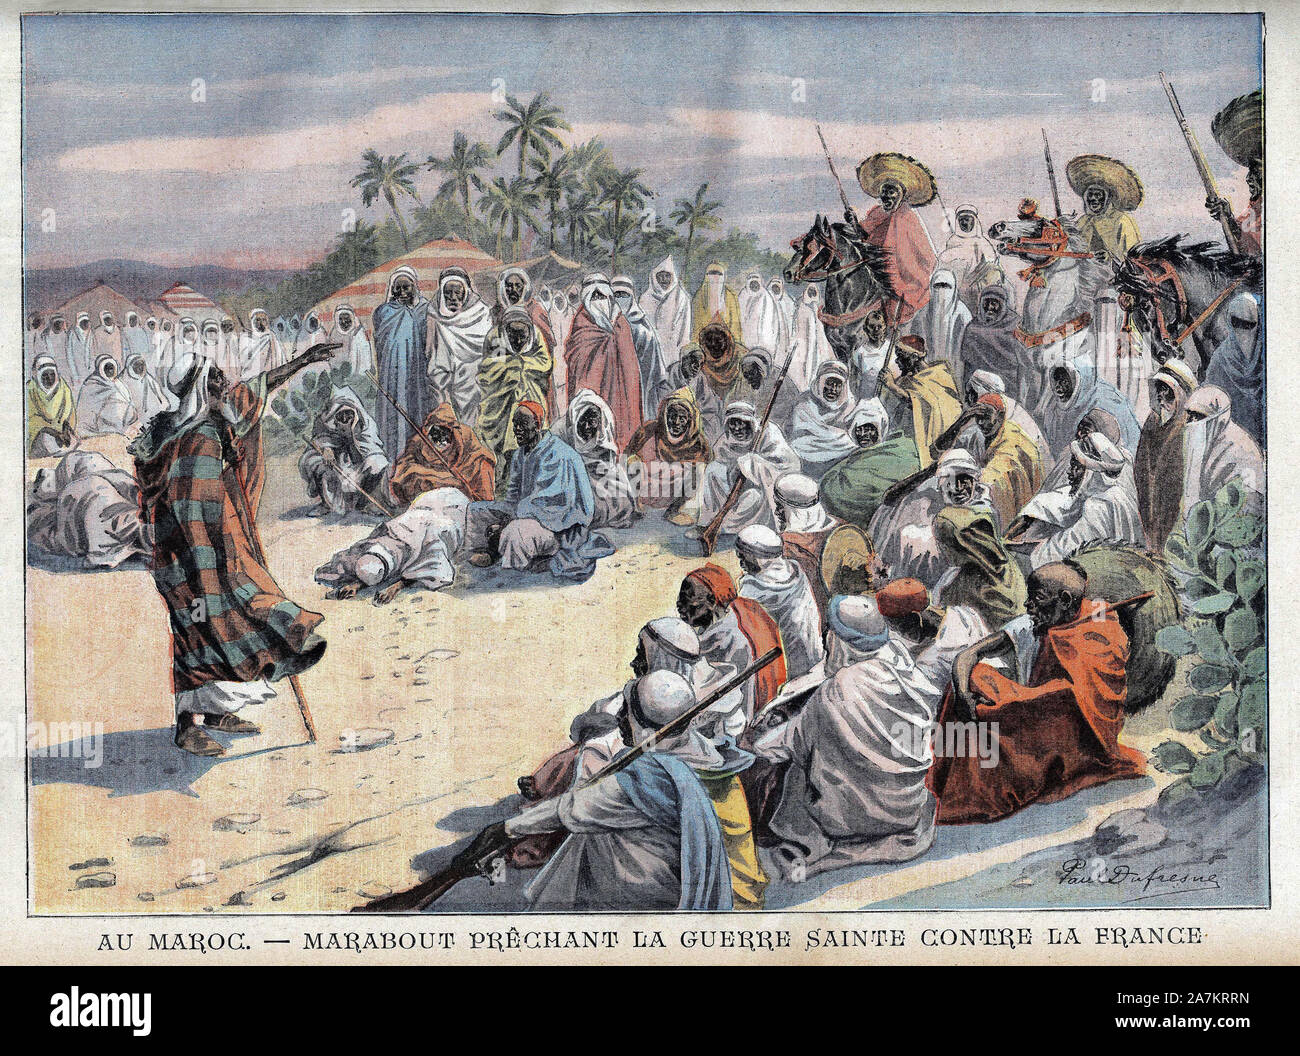 Au Maroc, l'hostilite contre les troupes de l'Armée Francaise grandit, favorisant la lutte Armée de tribus rebelles. Il rotocalco in "Le Petit Parisien", l Foto Stock